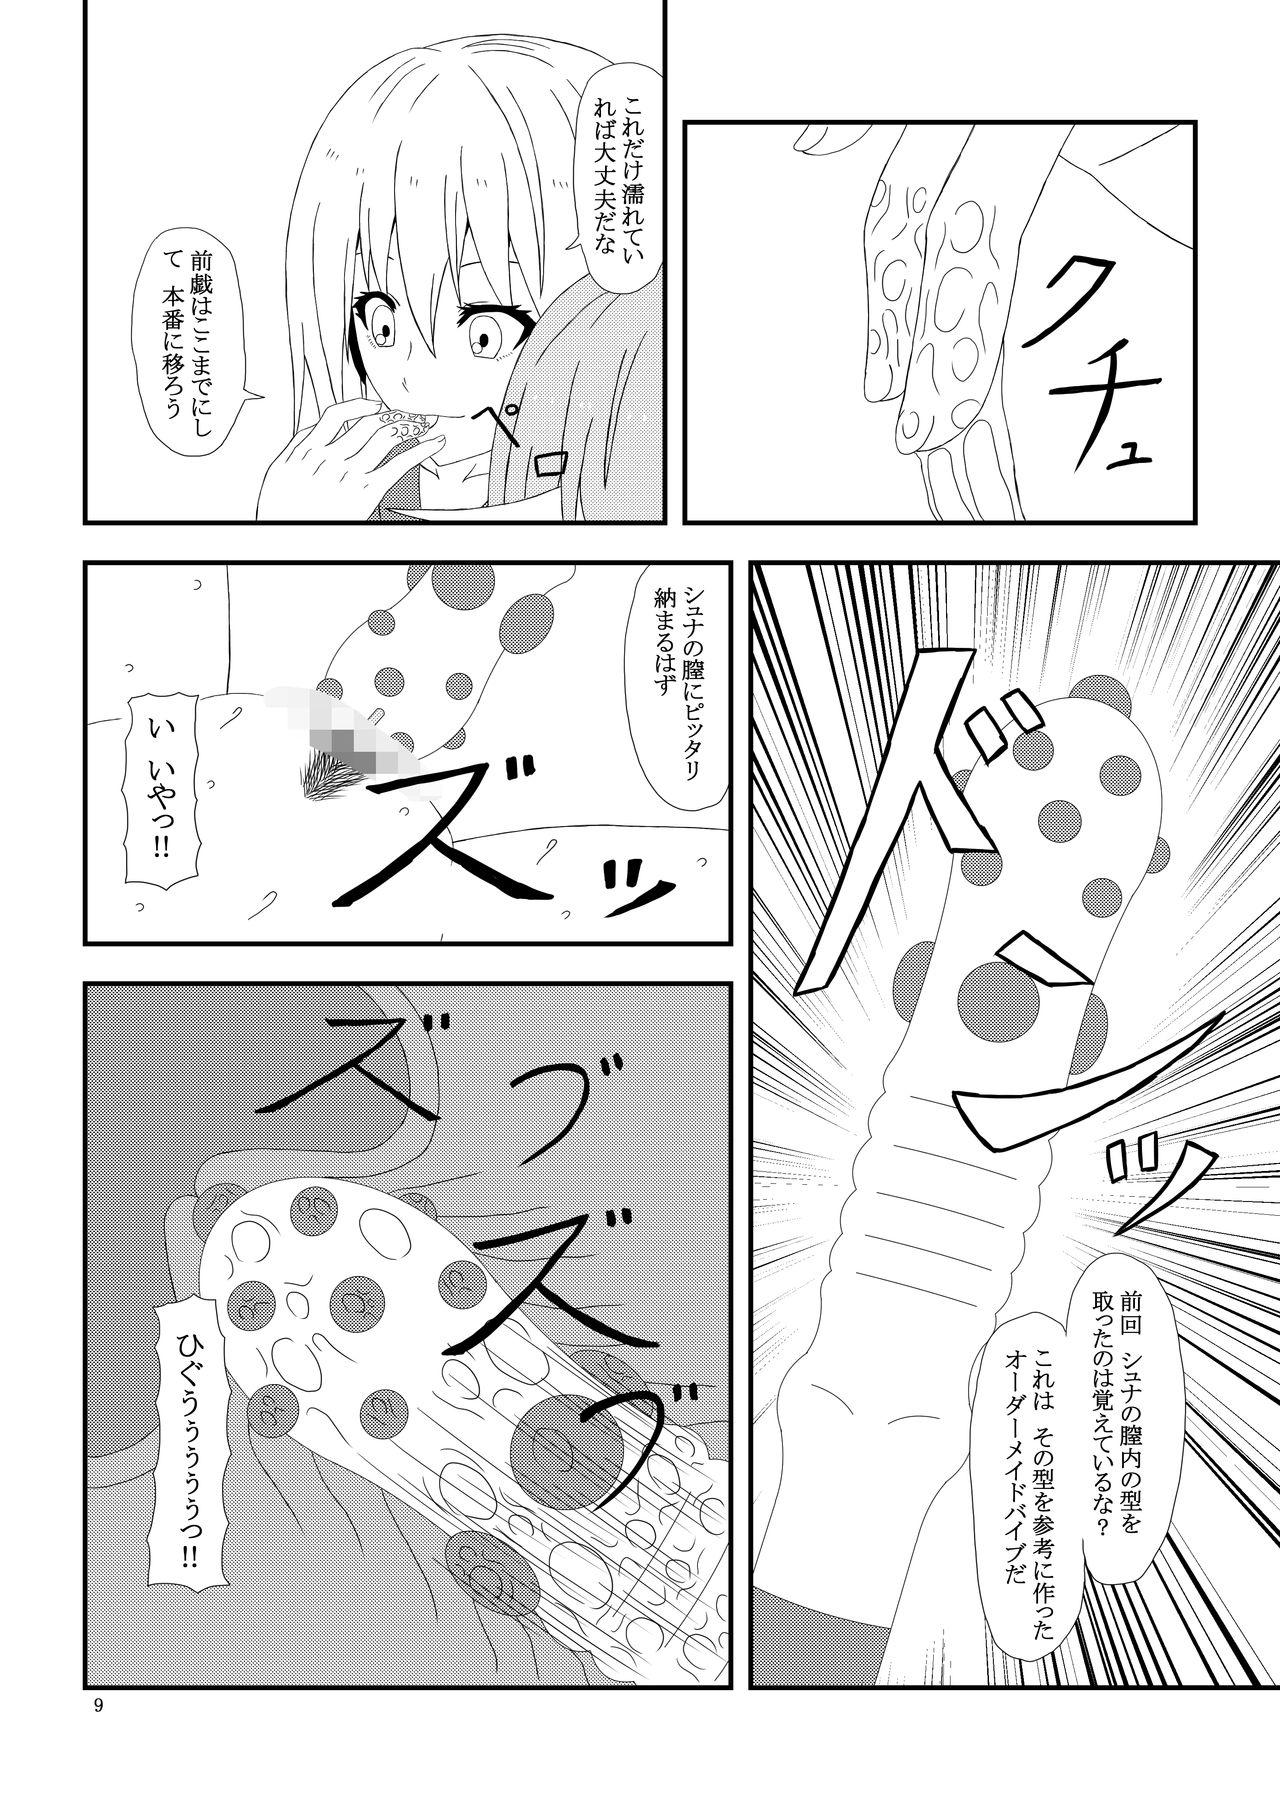 Gayporn Otona no TenSli - Tensei shitara slime datta ken Titfuck - Page 10